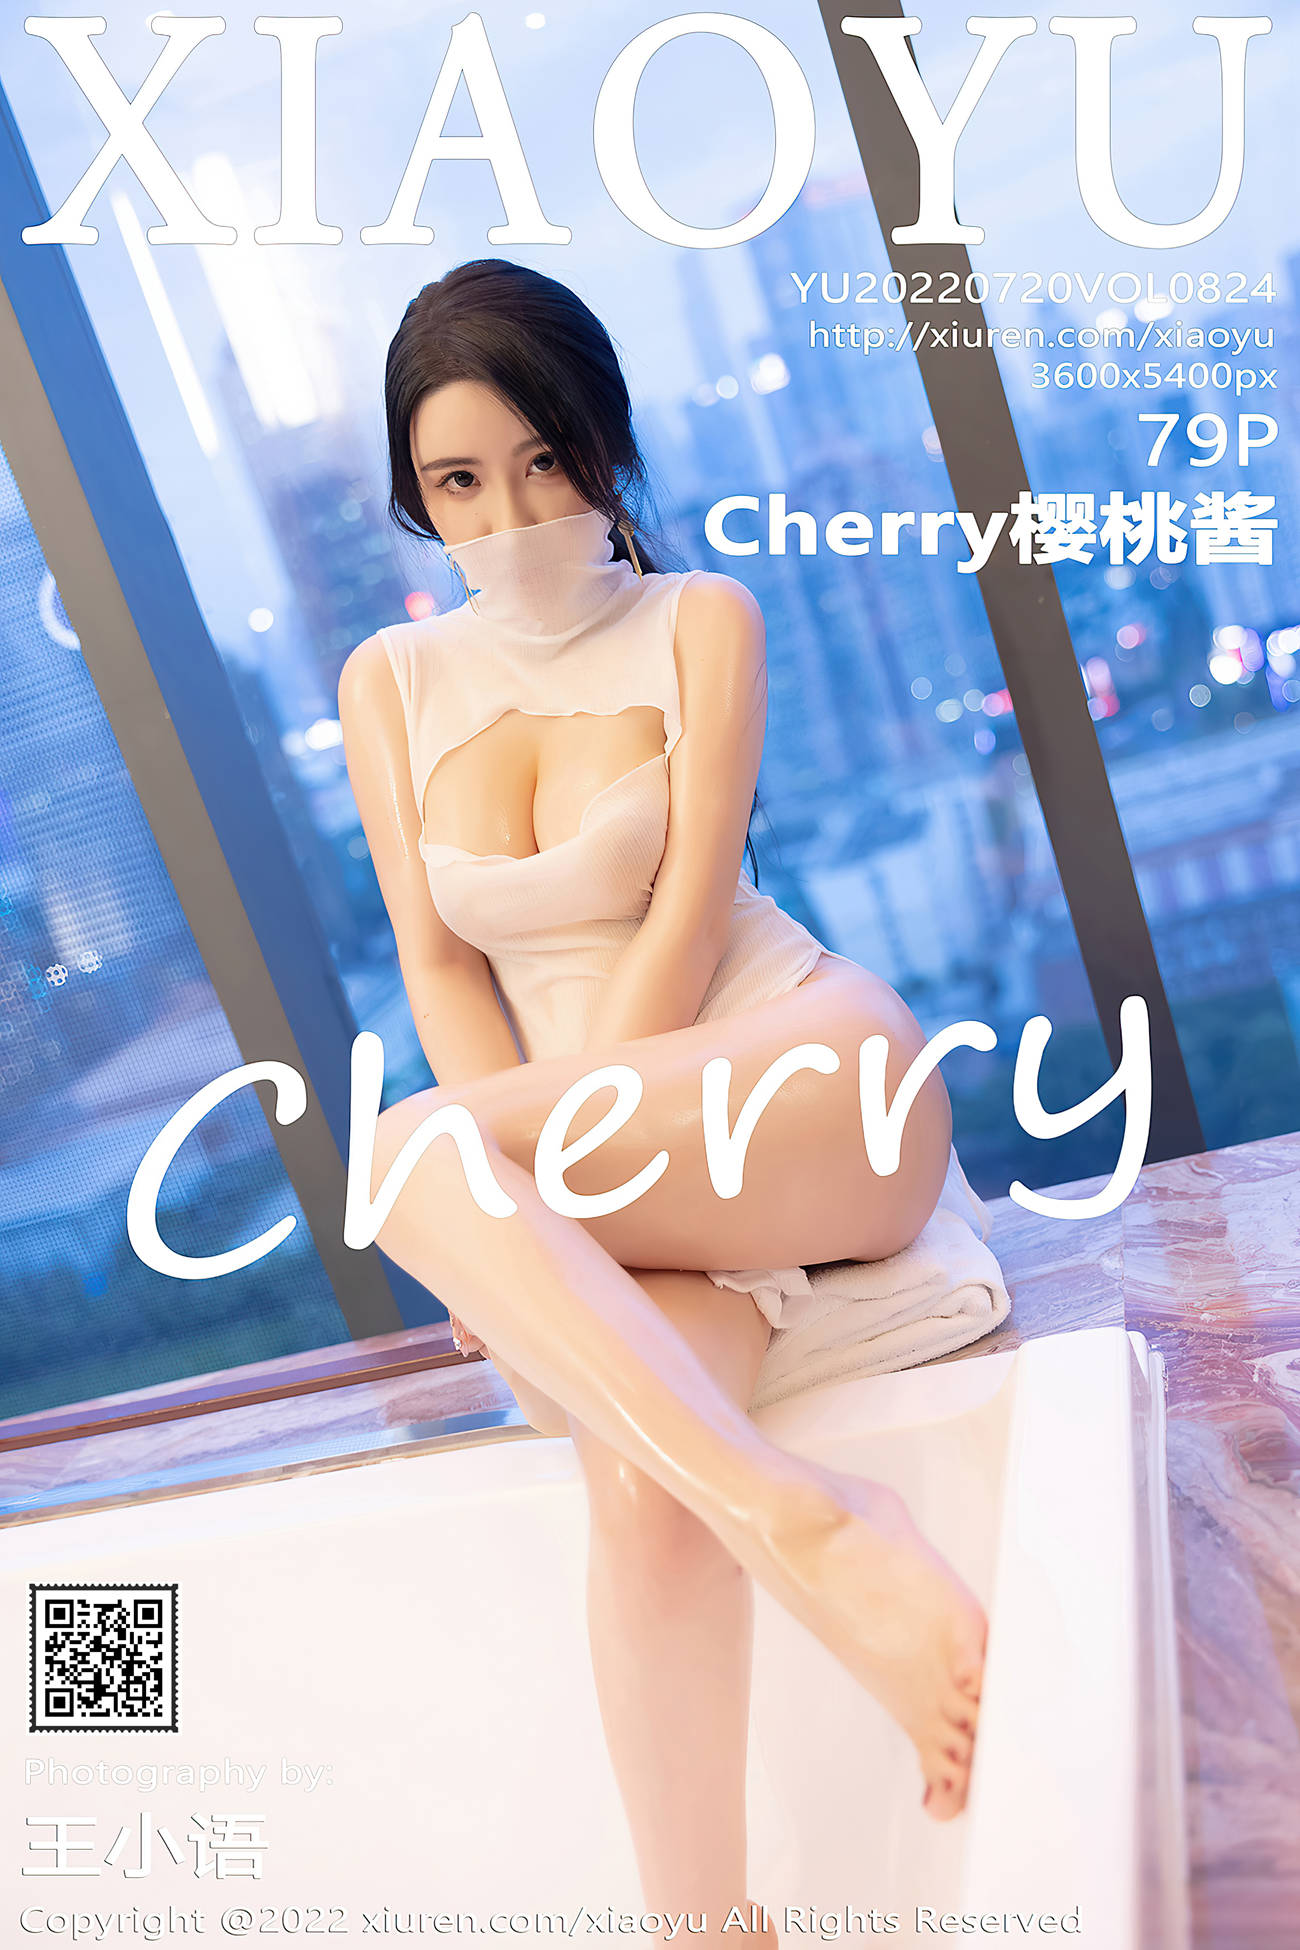 [XIAOYU语画界] 2022.07.20 VOL.824 Cherry樱桃酱 丝袜美腿[47P]第1张